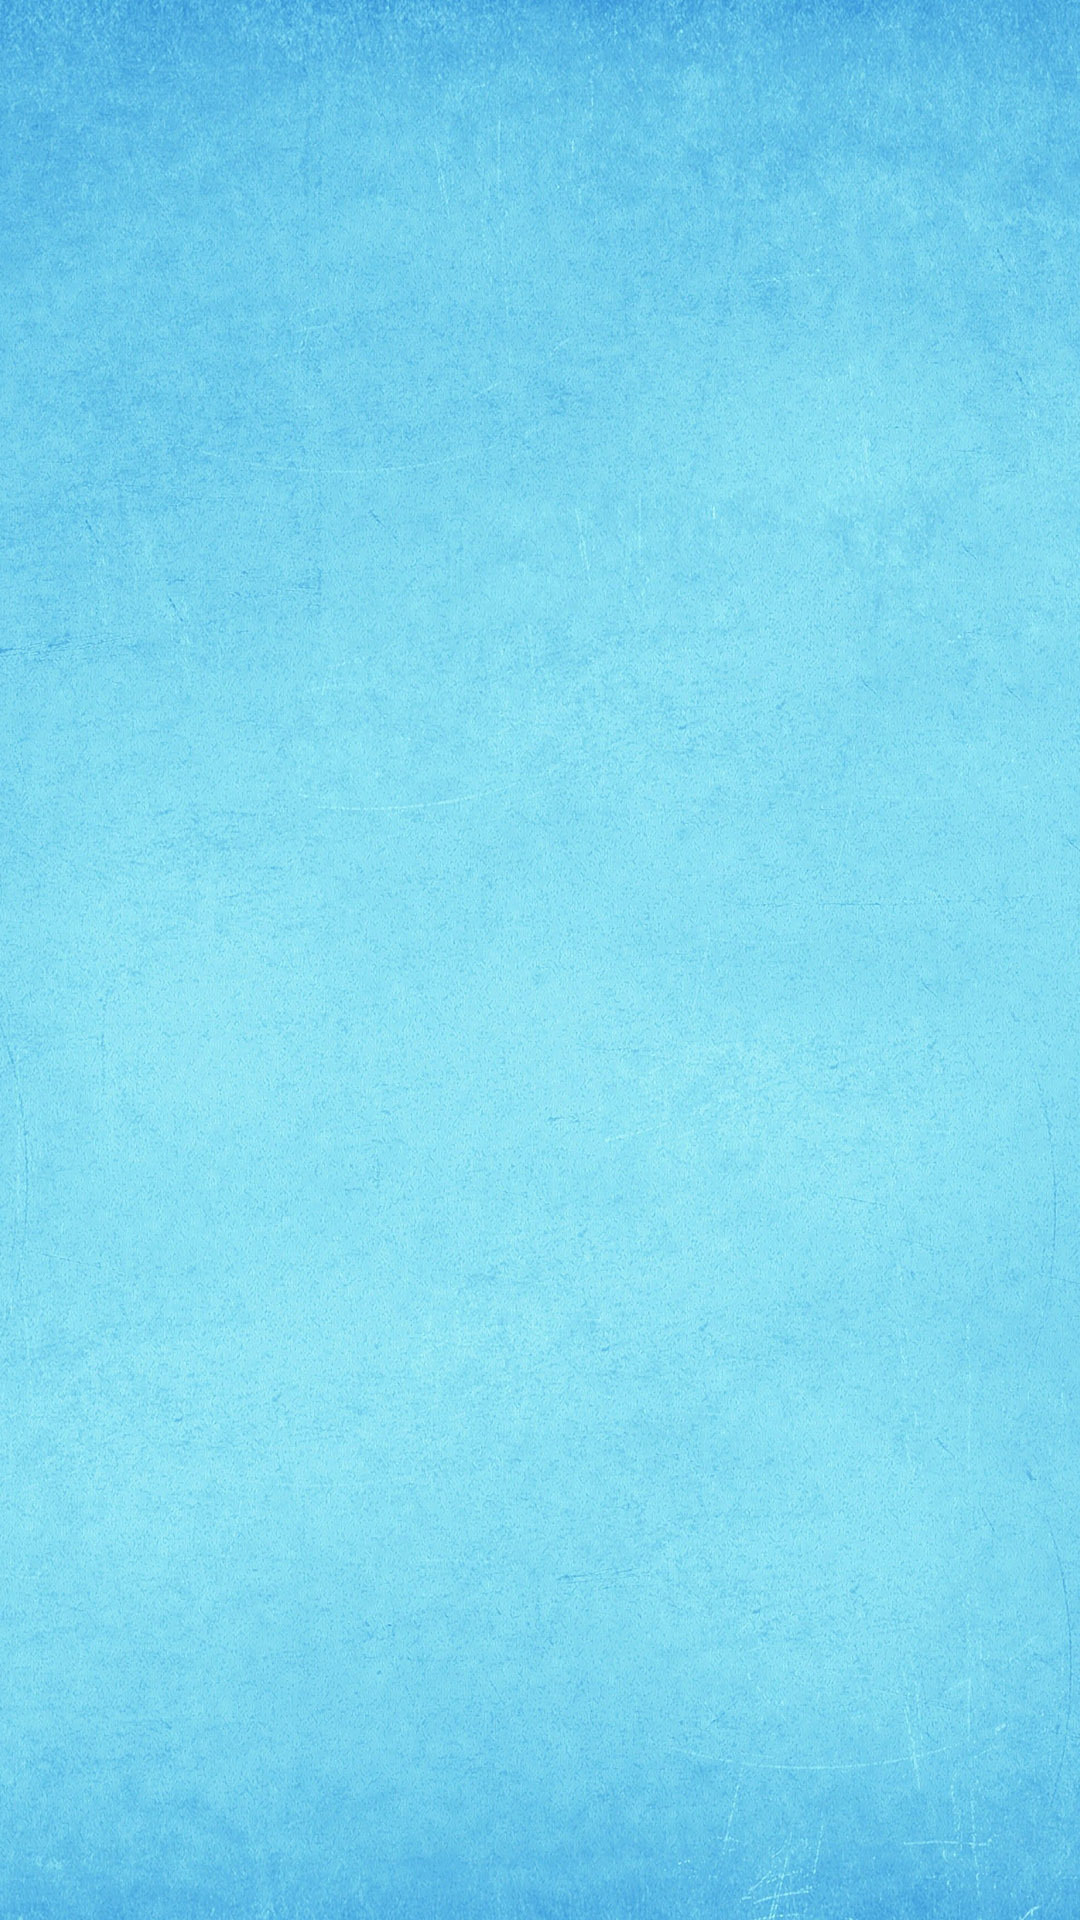 質感のいいiphone6s壁紙 ブルー Iphone Wallpapers